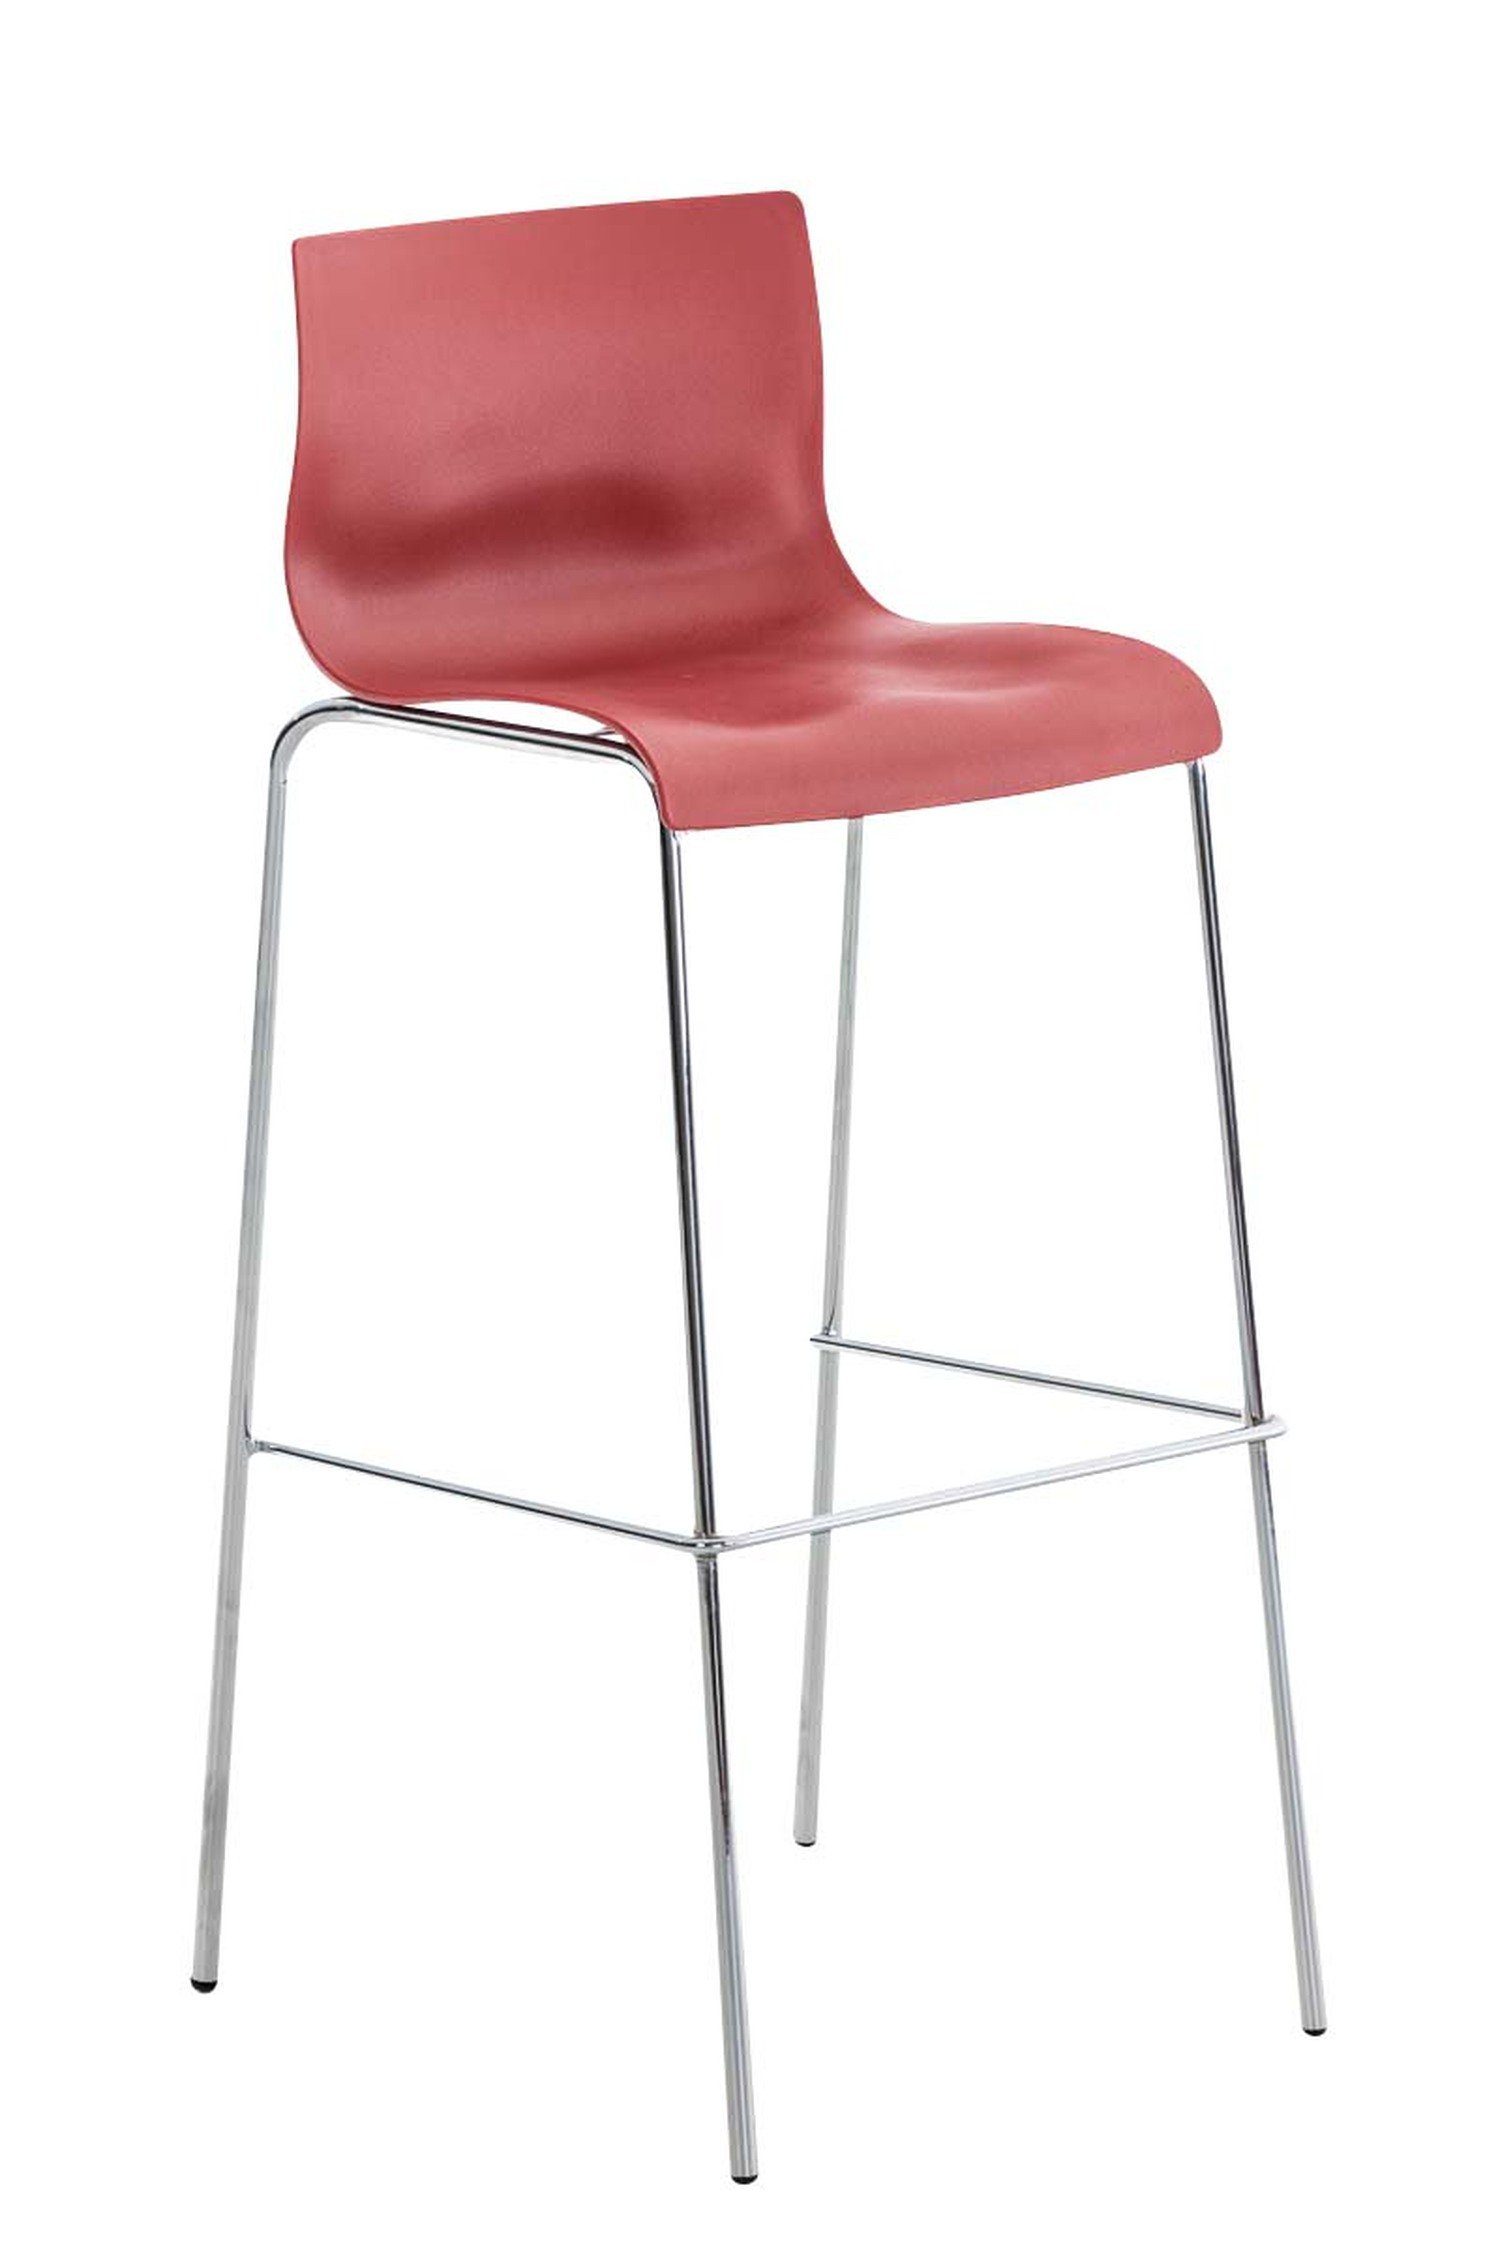 TPFLiving Barhocker Hoover (mit Fußstütze - Hocker für Theke & Küche - Tresenhocker), Gestell Metall Chrom - Sitzfläche: Kunststoff Rot